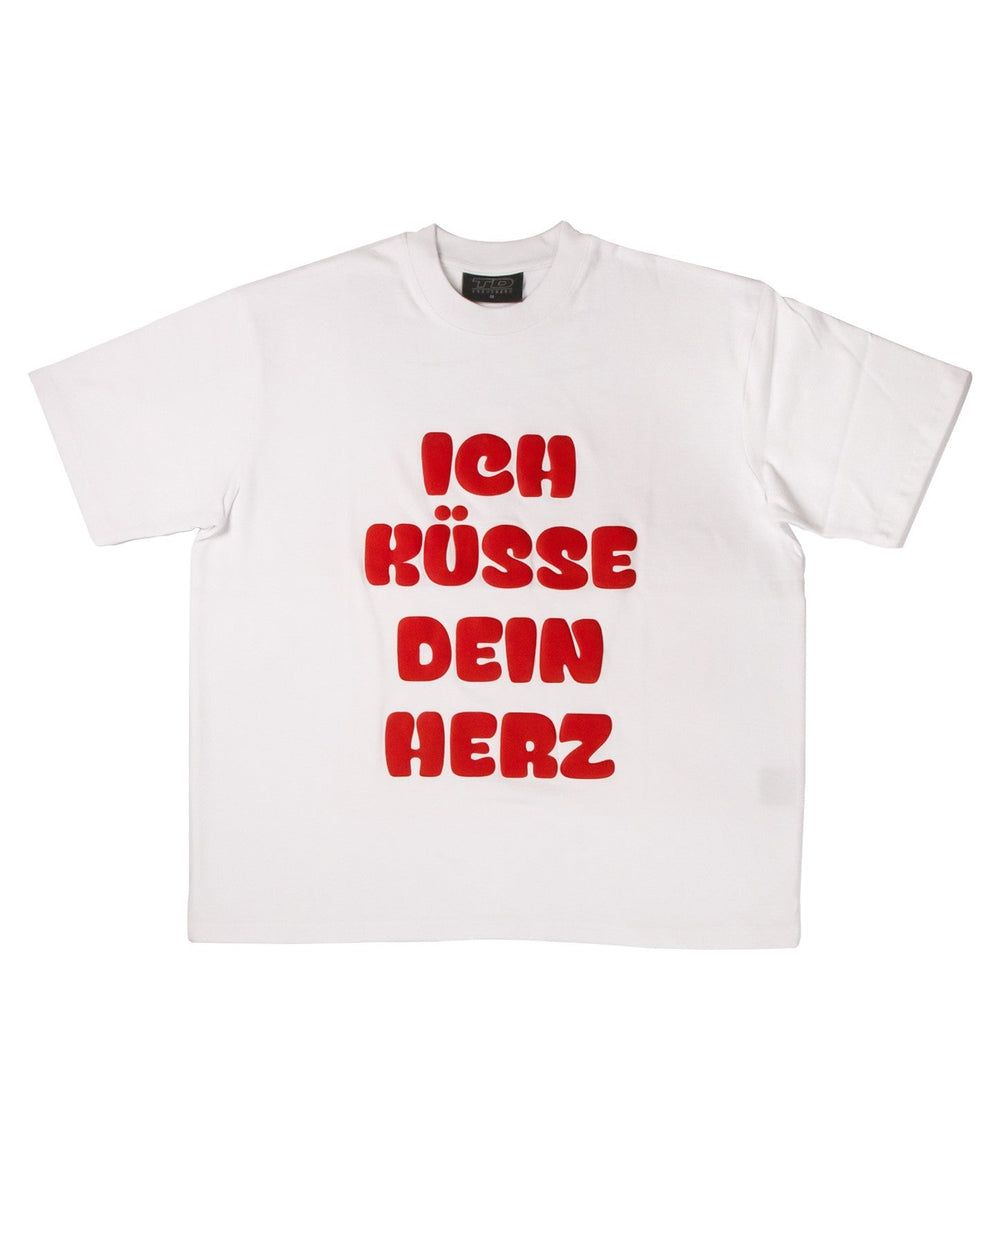 IKDH Tshirt - True Die 361